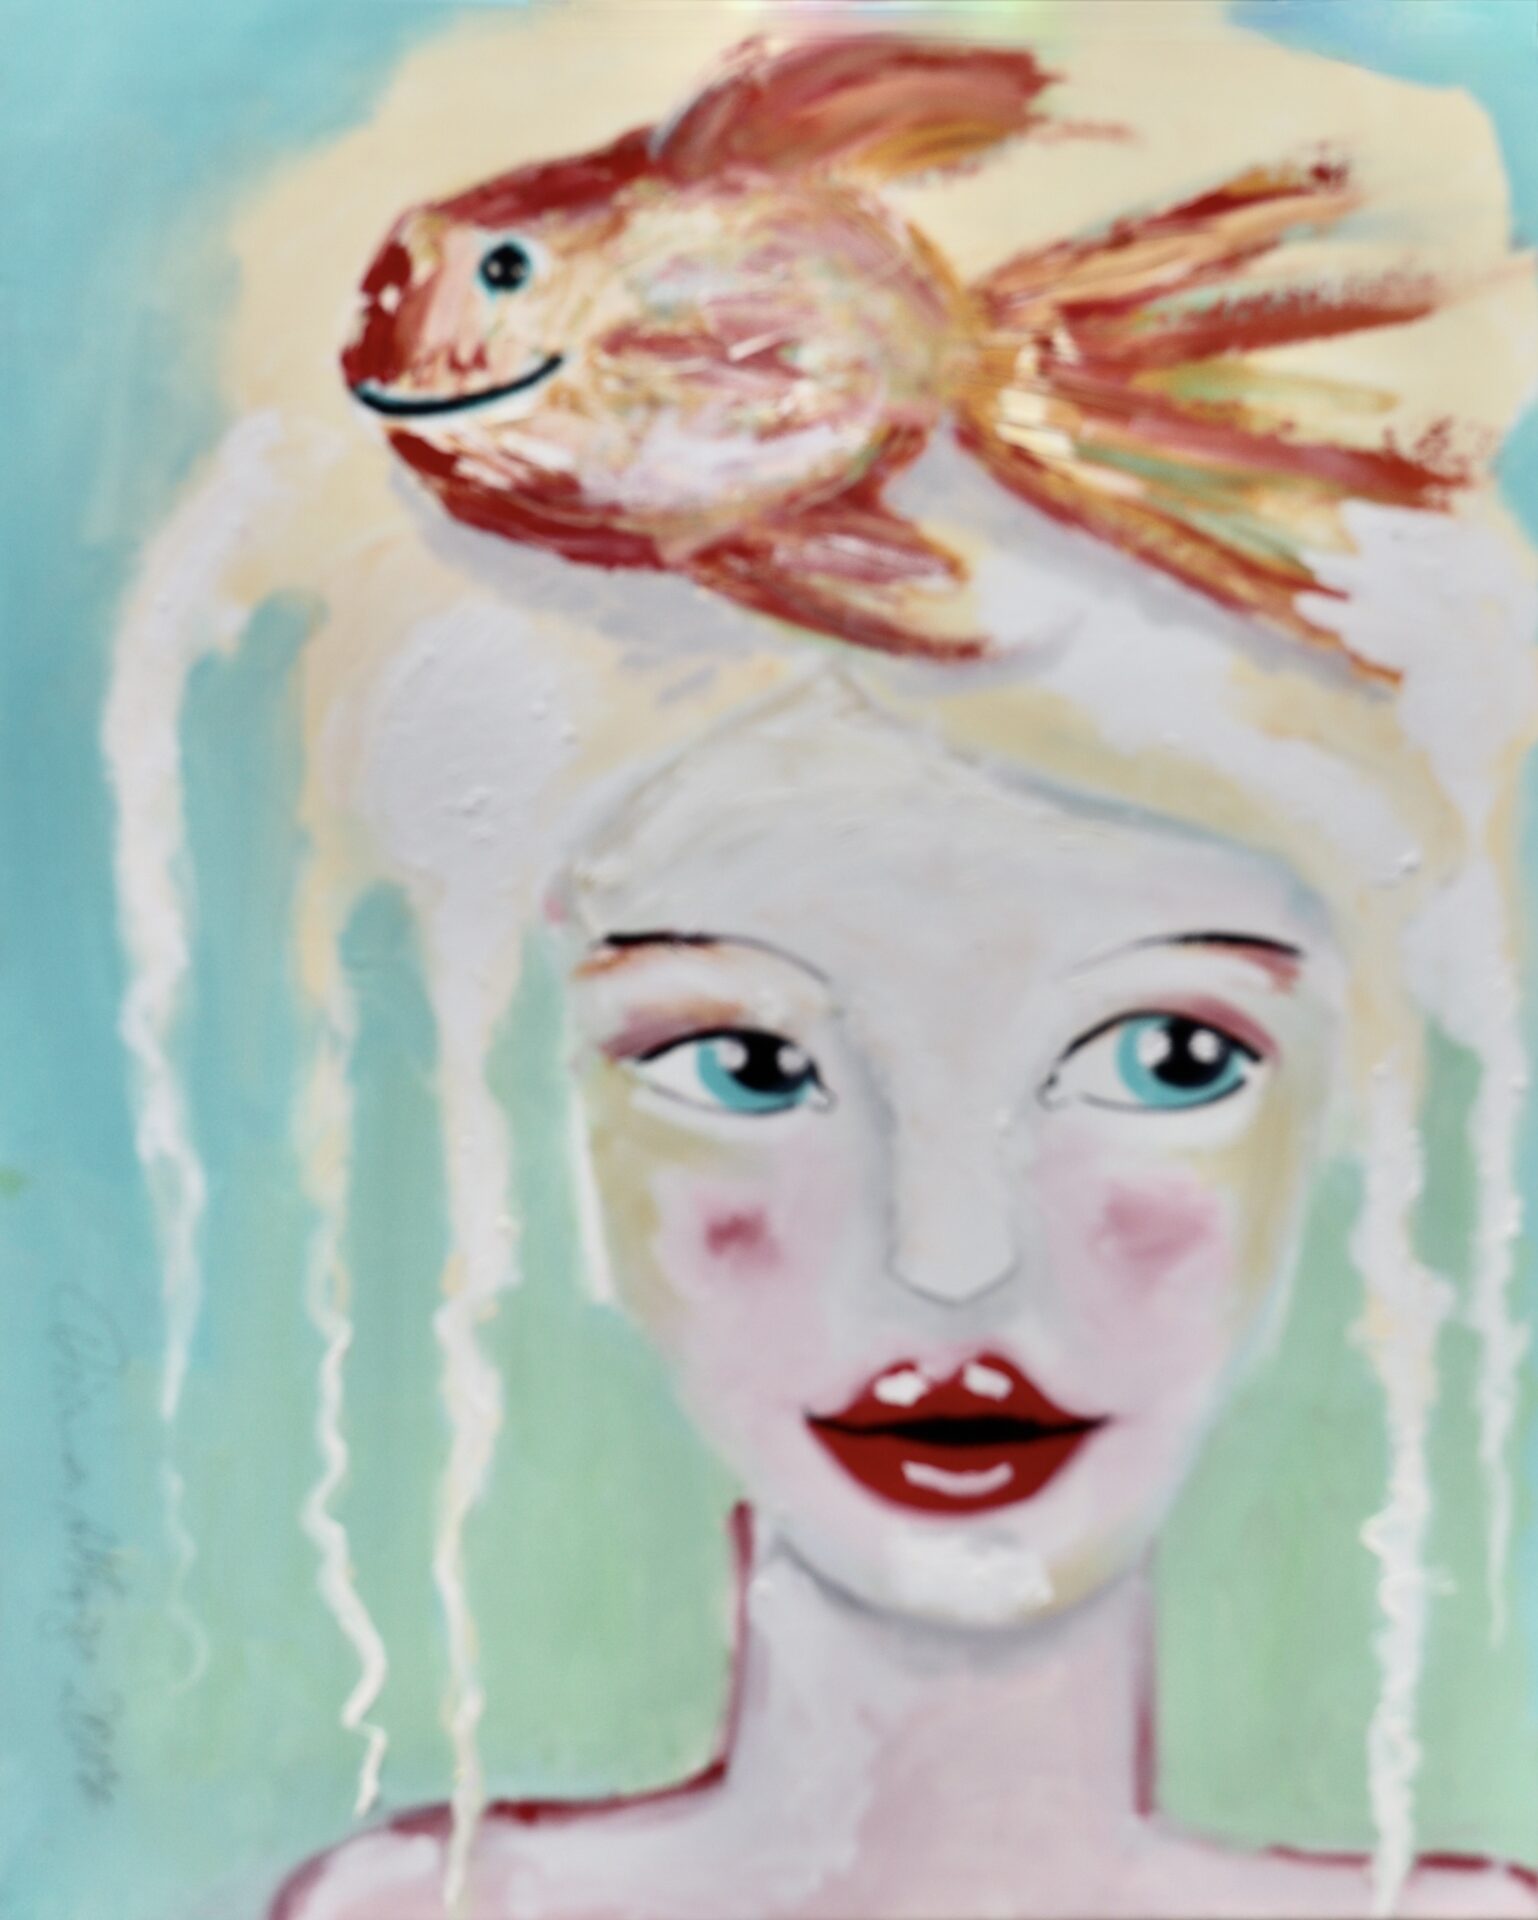 Exklusives Geburtstagsgeschenk für Familien und Kinder: Malerin Diana Achtzig: Roter Fisch mit Mädchen, Ölfarbe auf Leinwand, 60 x 50 cm, 2017, Berlin 250 €.